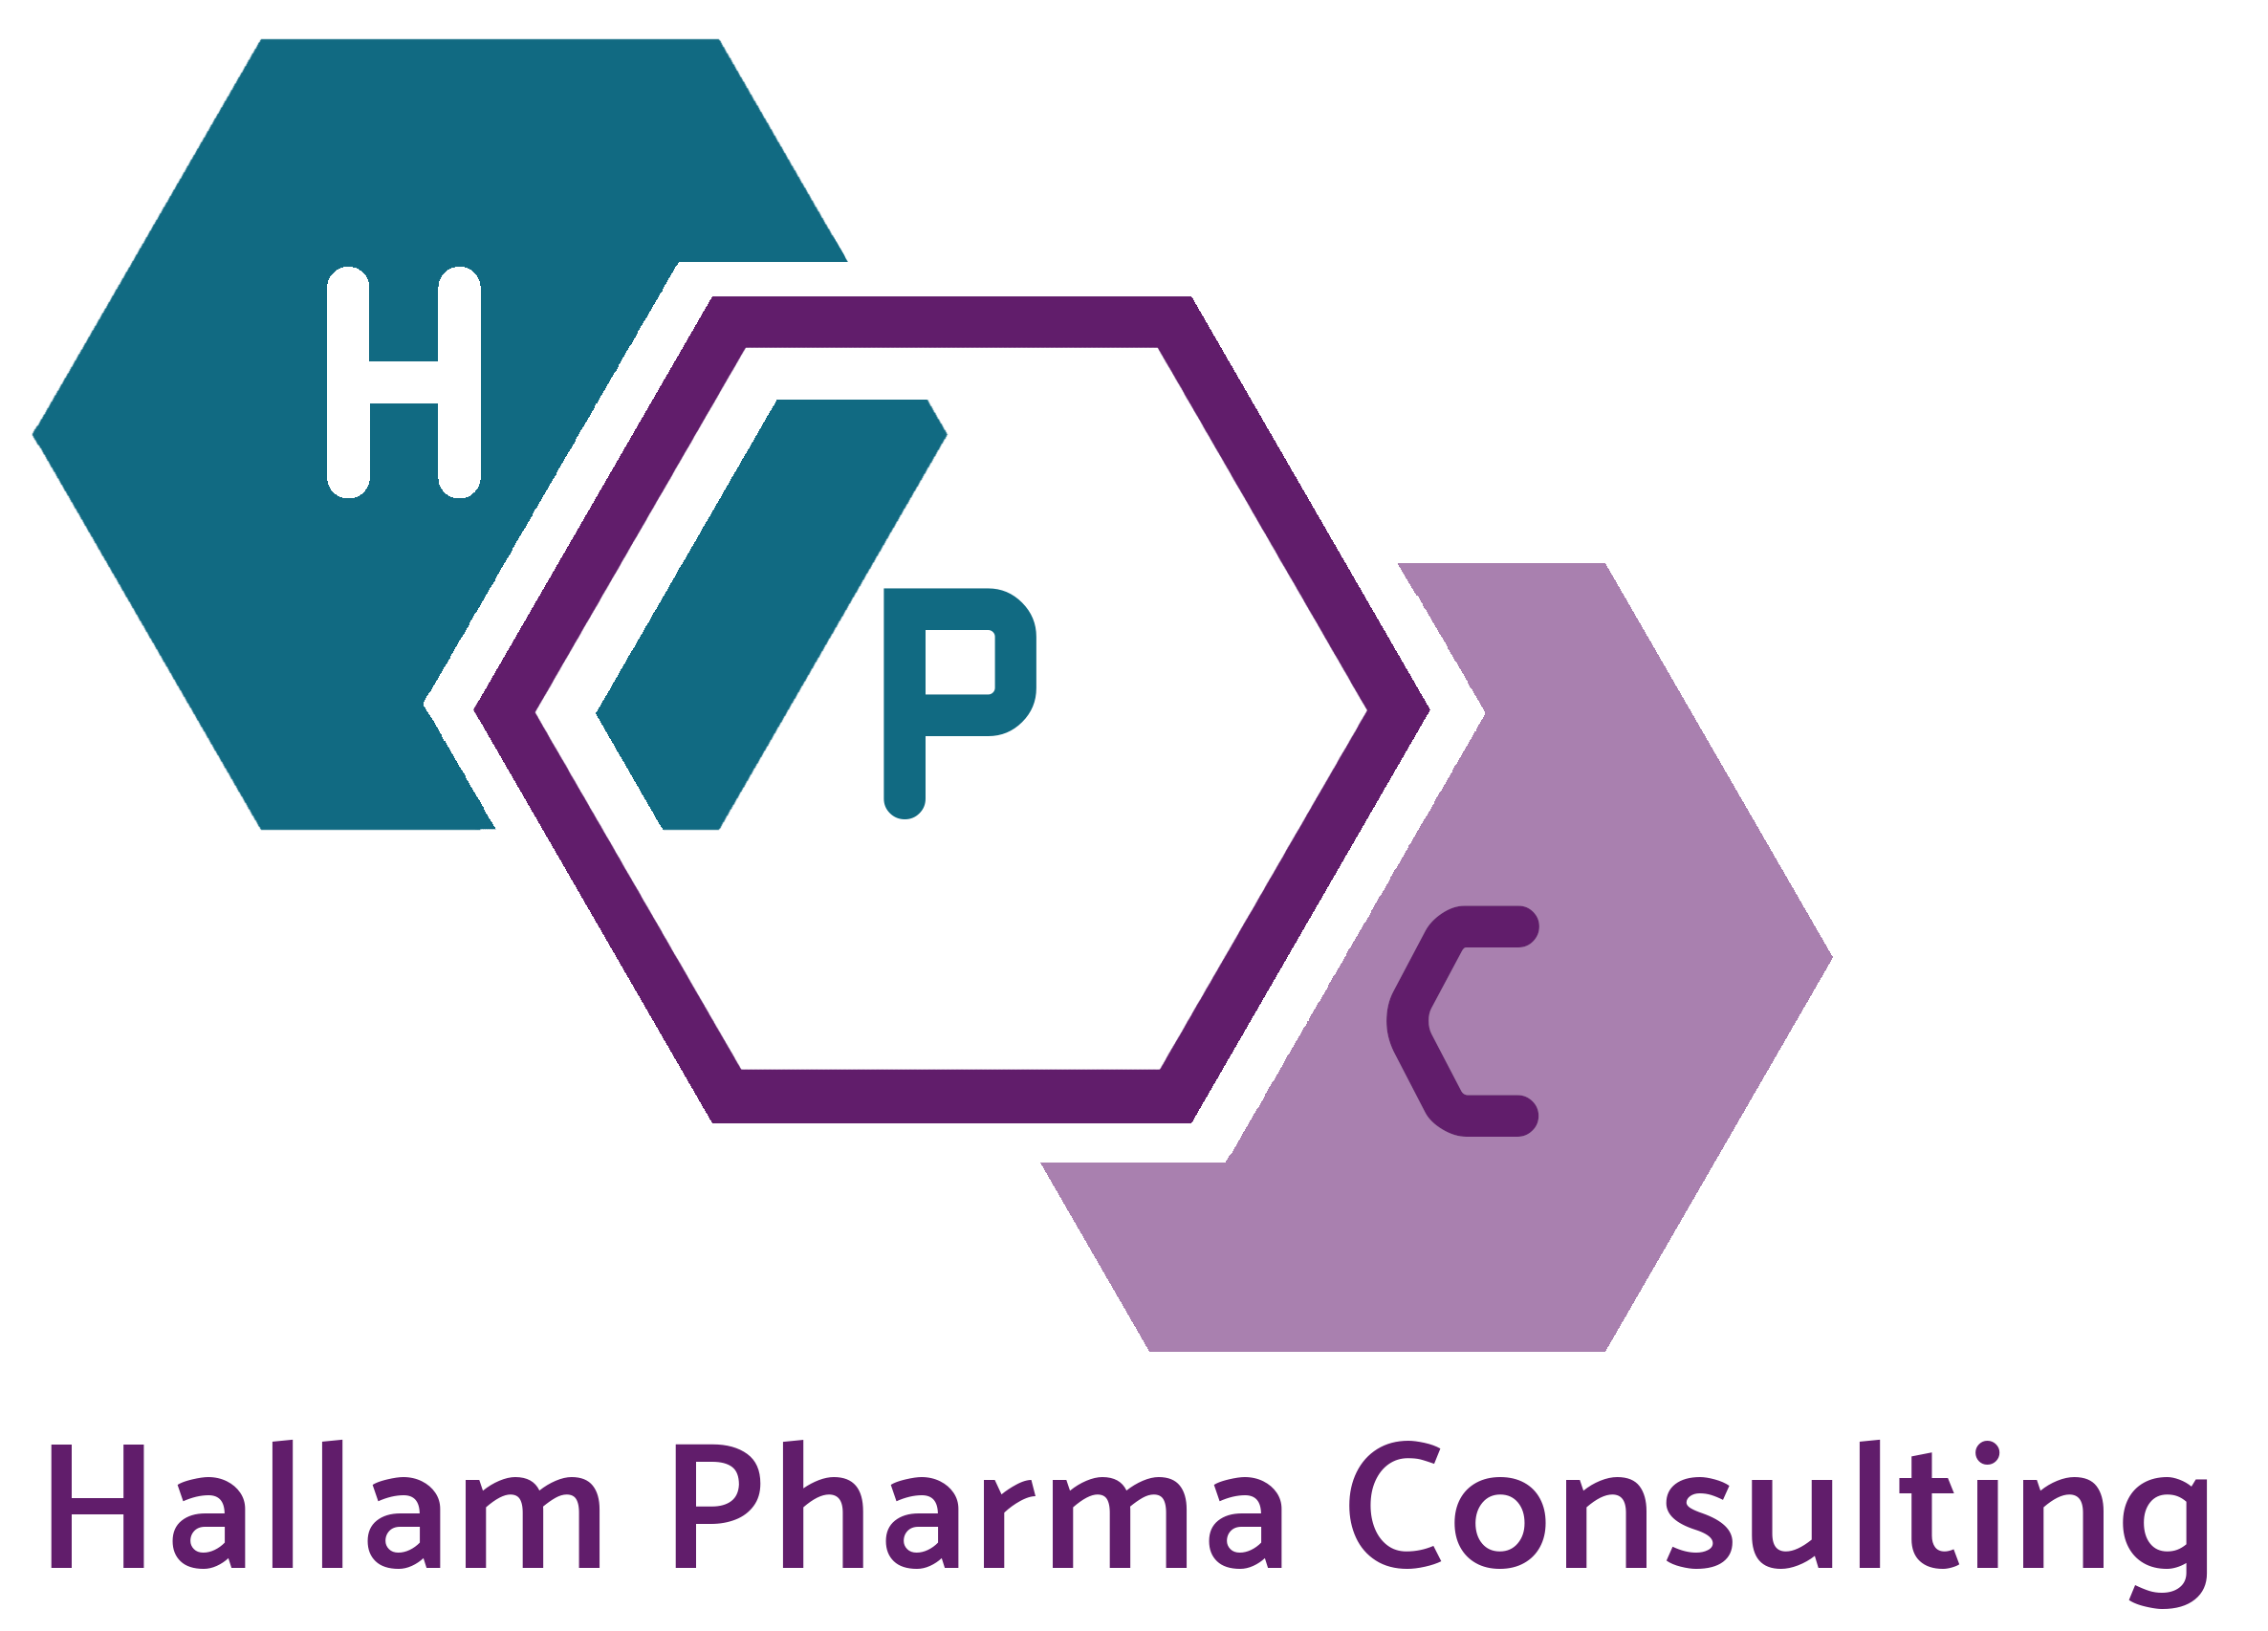 Hallam Pharma Consulting Ltd